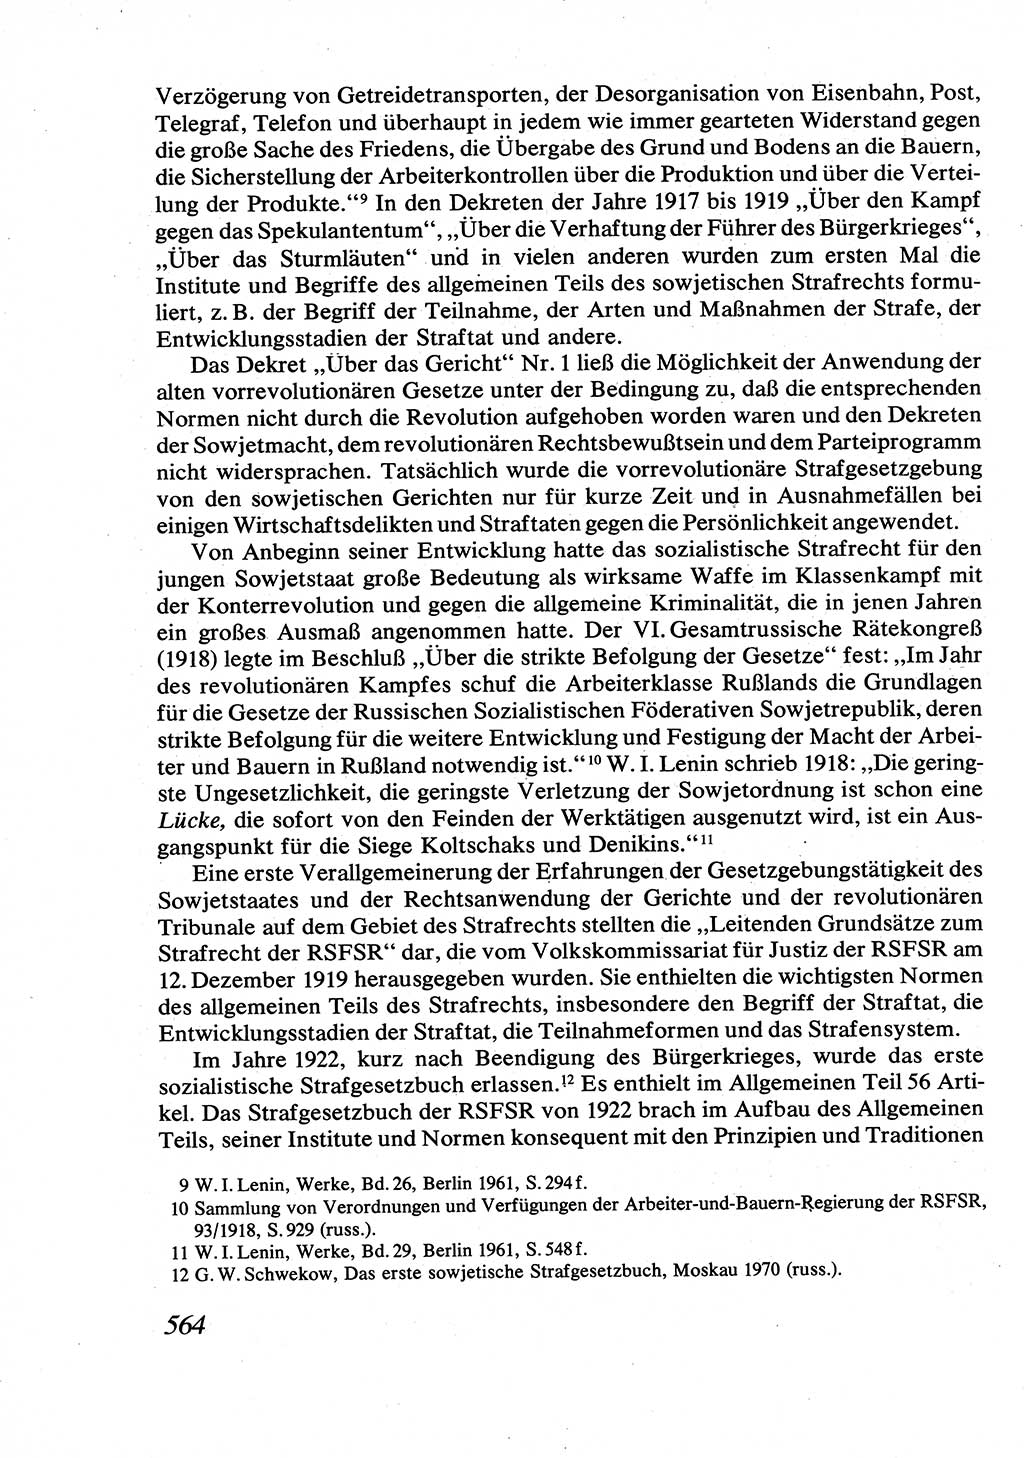 Strafrecht [Deutsche Demokratische Republik (DDR)], Allgemeiner Teil, Lehrbuch 1976, Seite 564 (Strafr. DDR AT Lb. 1976, S. 564)